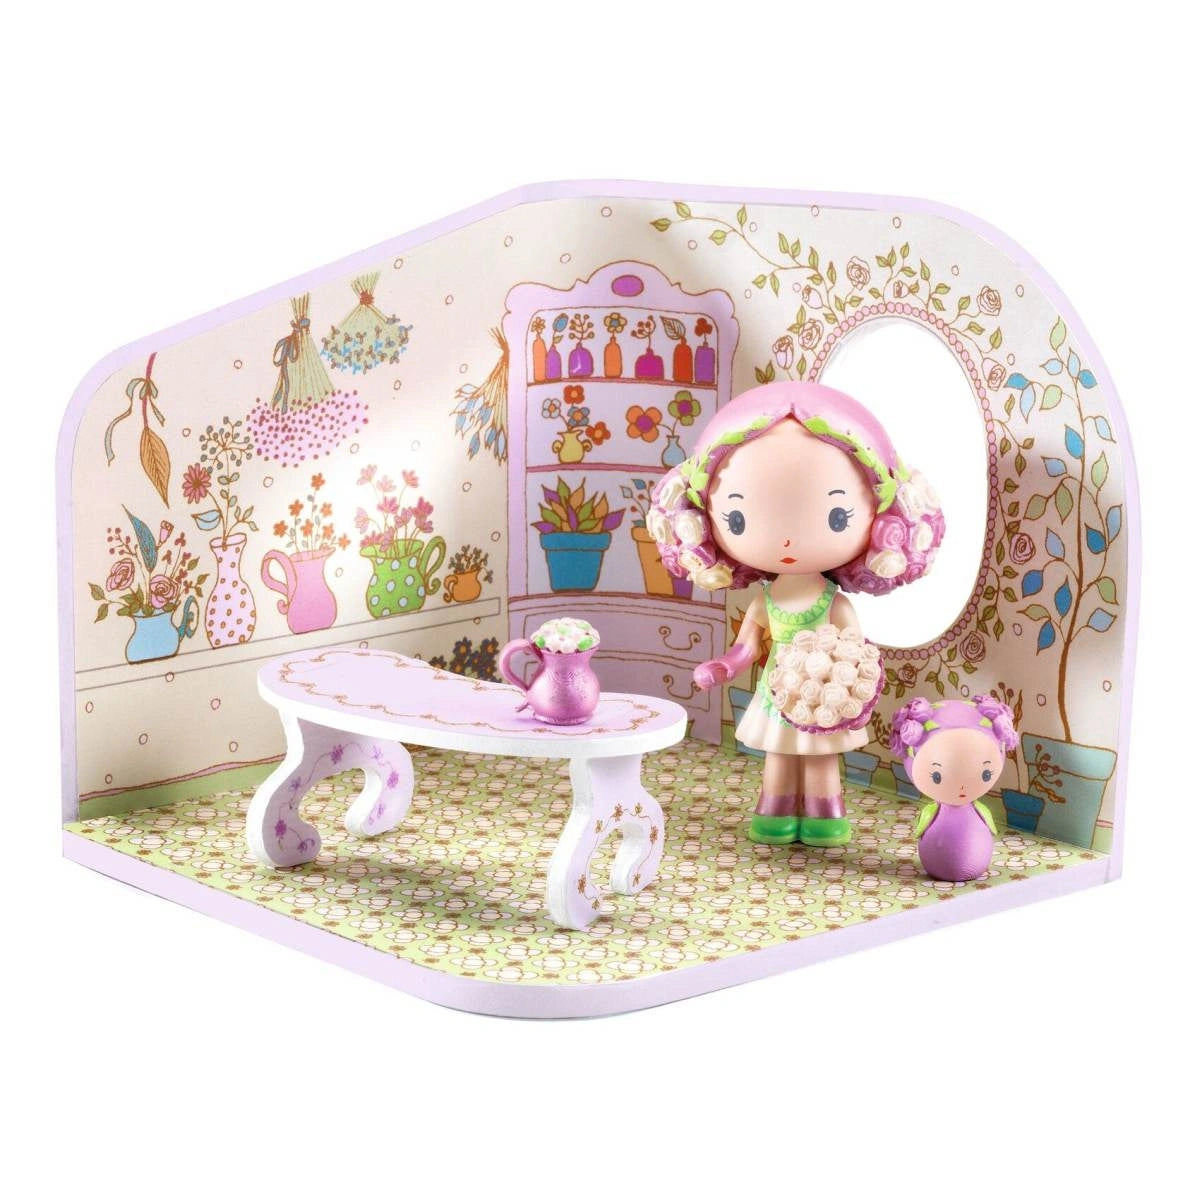 Tinyly Blumenladen -  Rosalie Shop